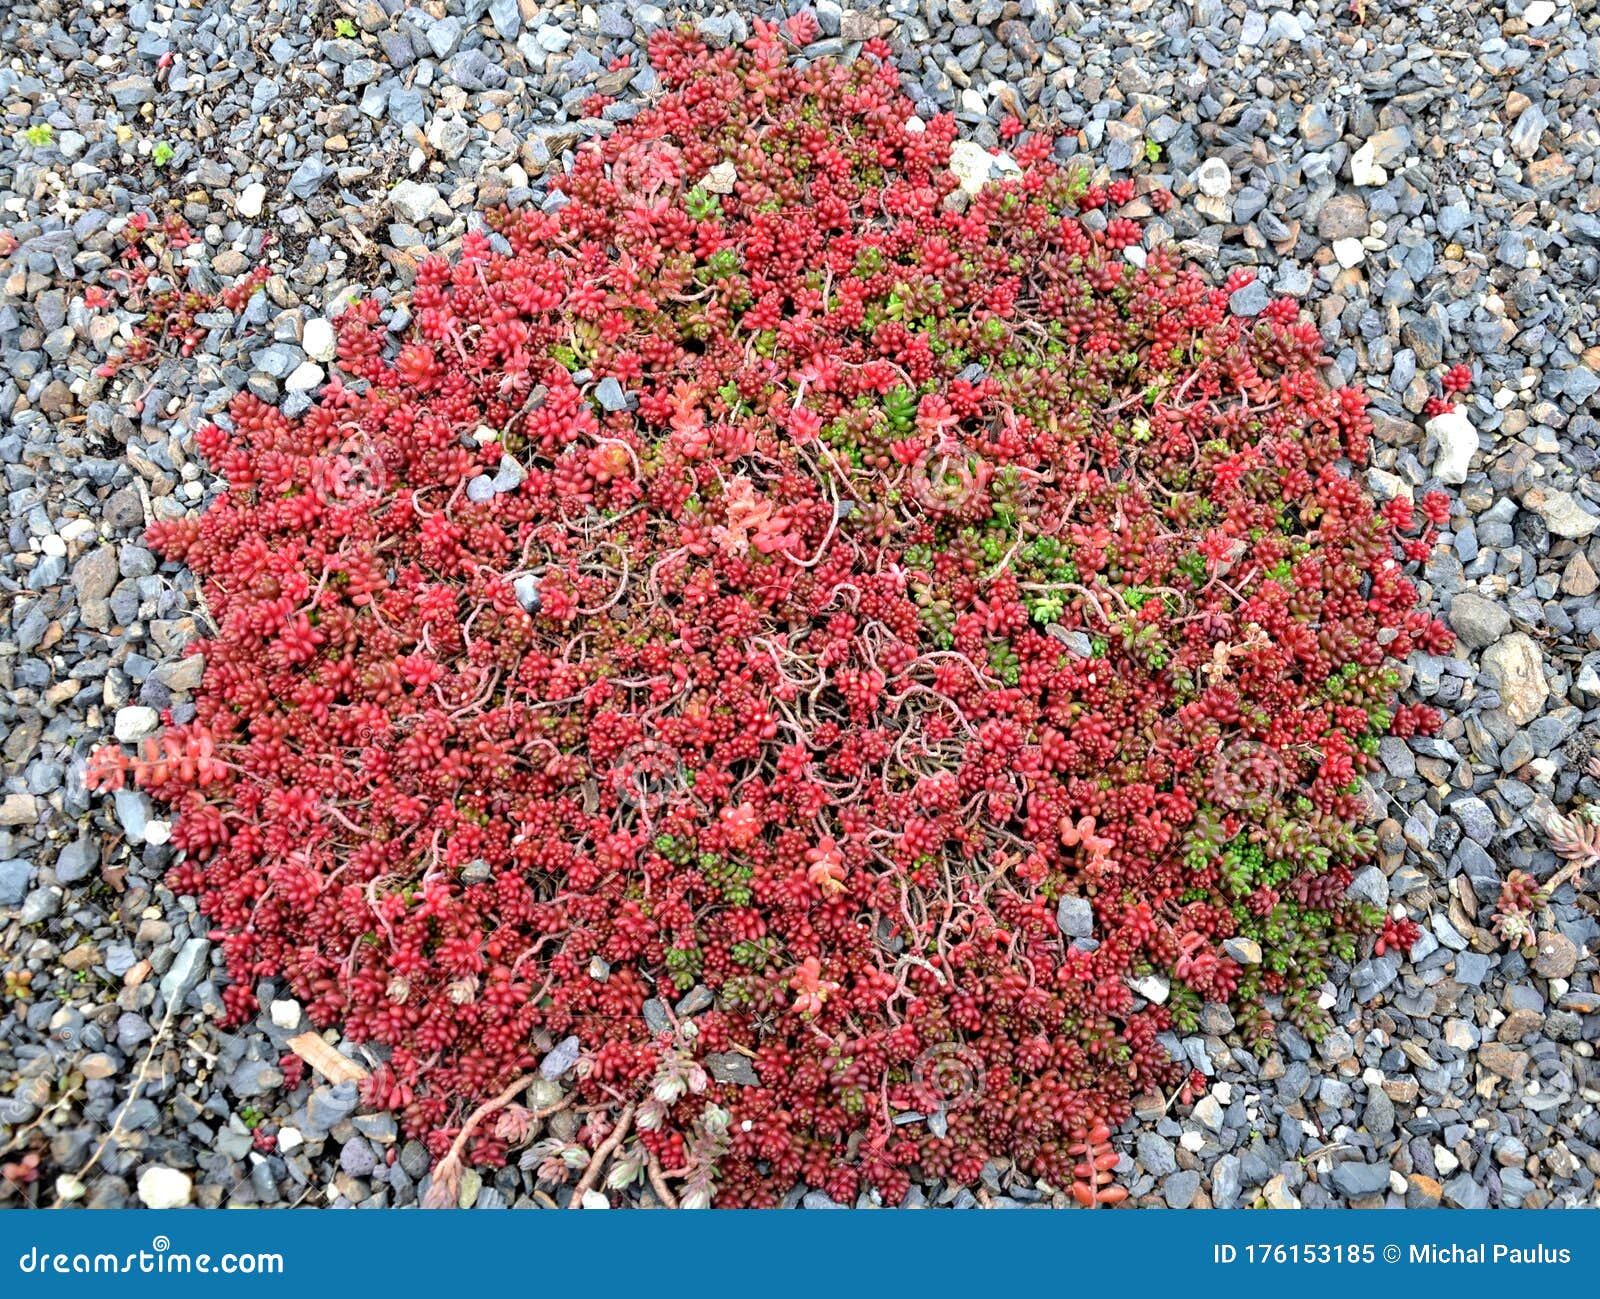 Sedum Album Red Carpet Ground Cover Roof Garden Gray Gravel Red Low Stock Image Image Of Sedum Cover 176153185